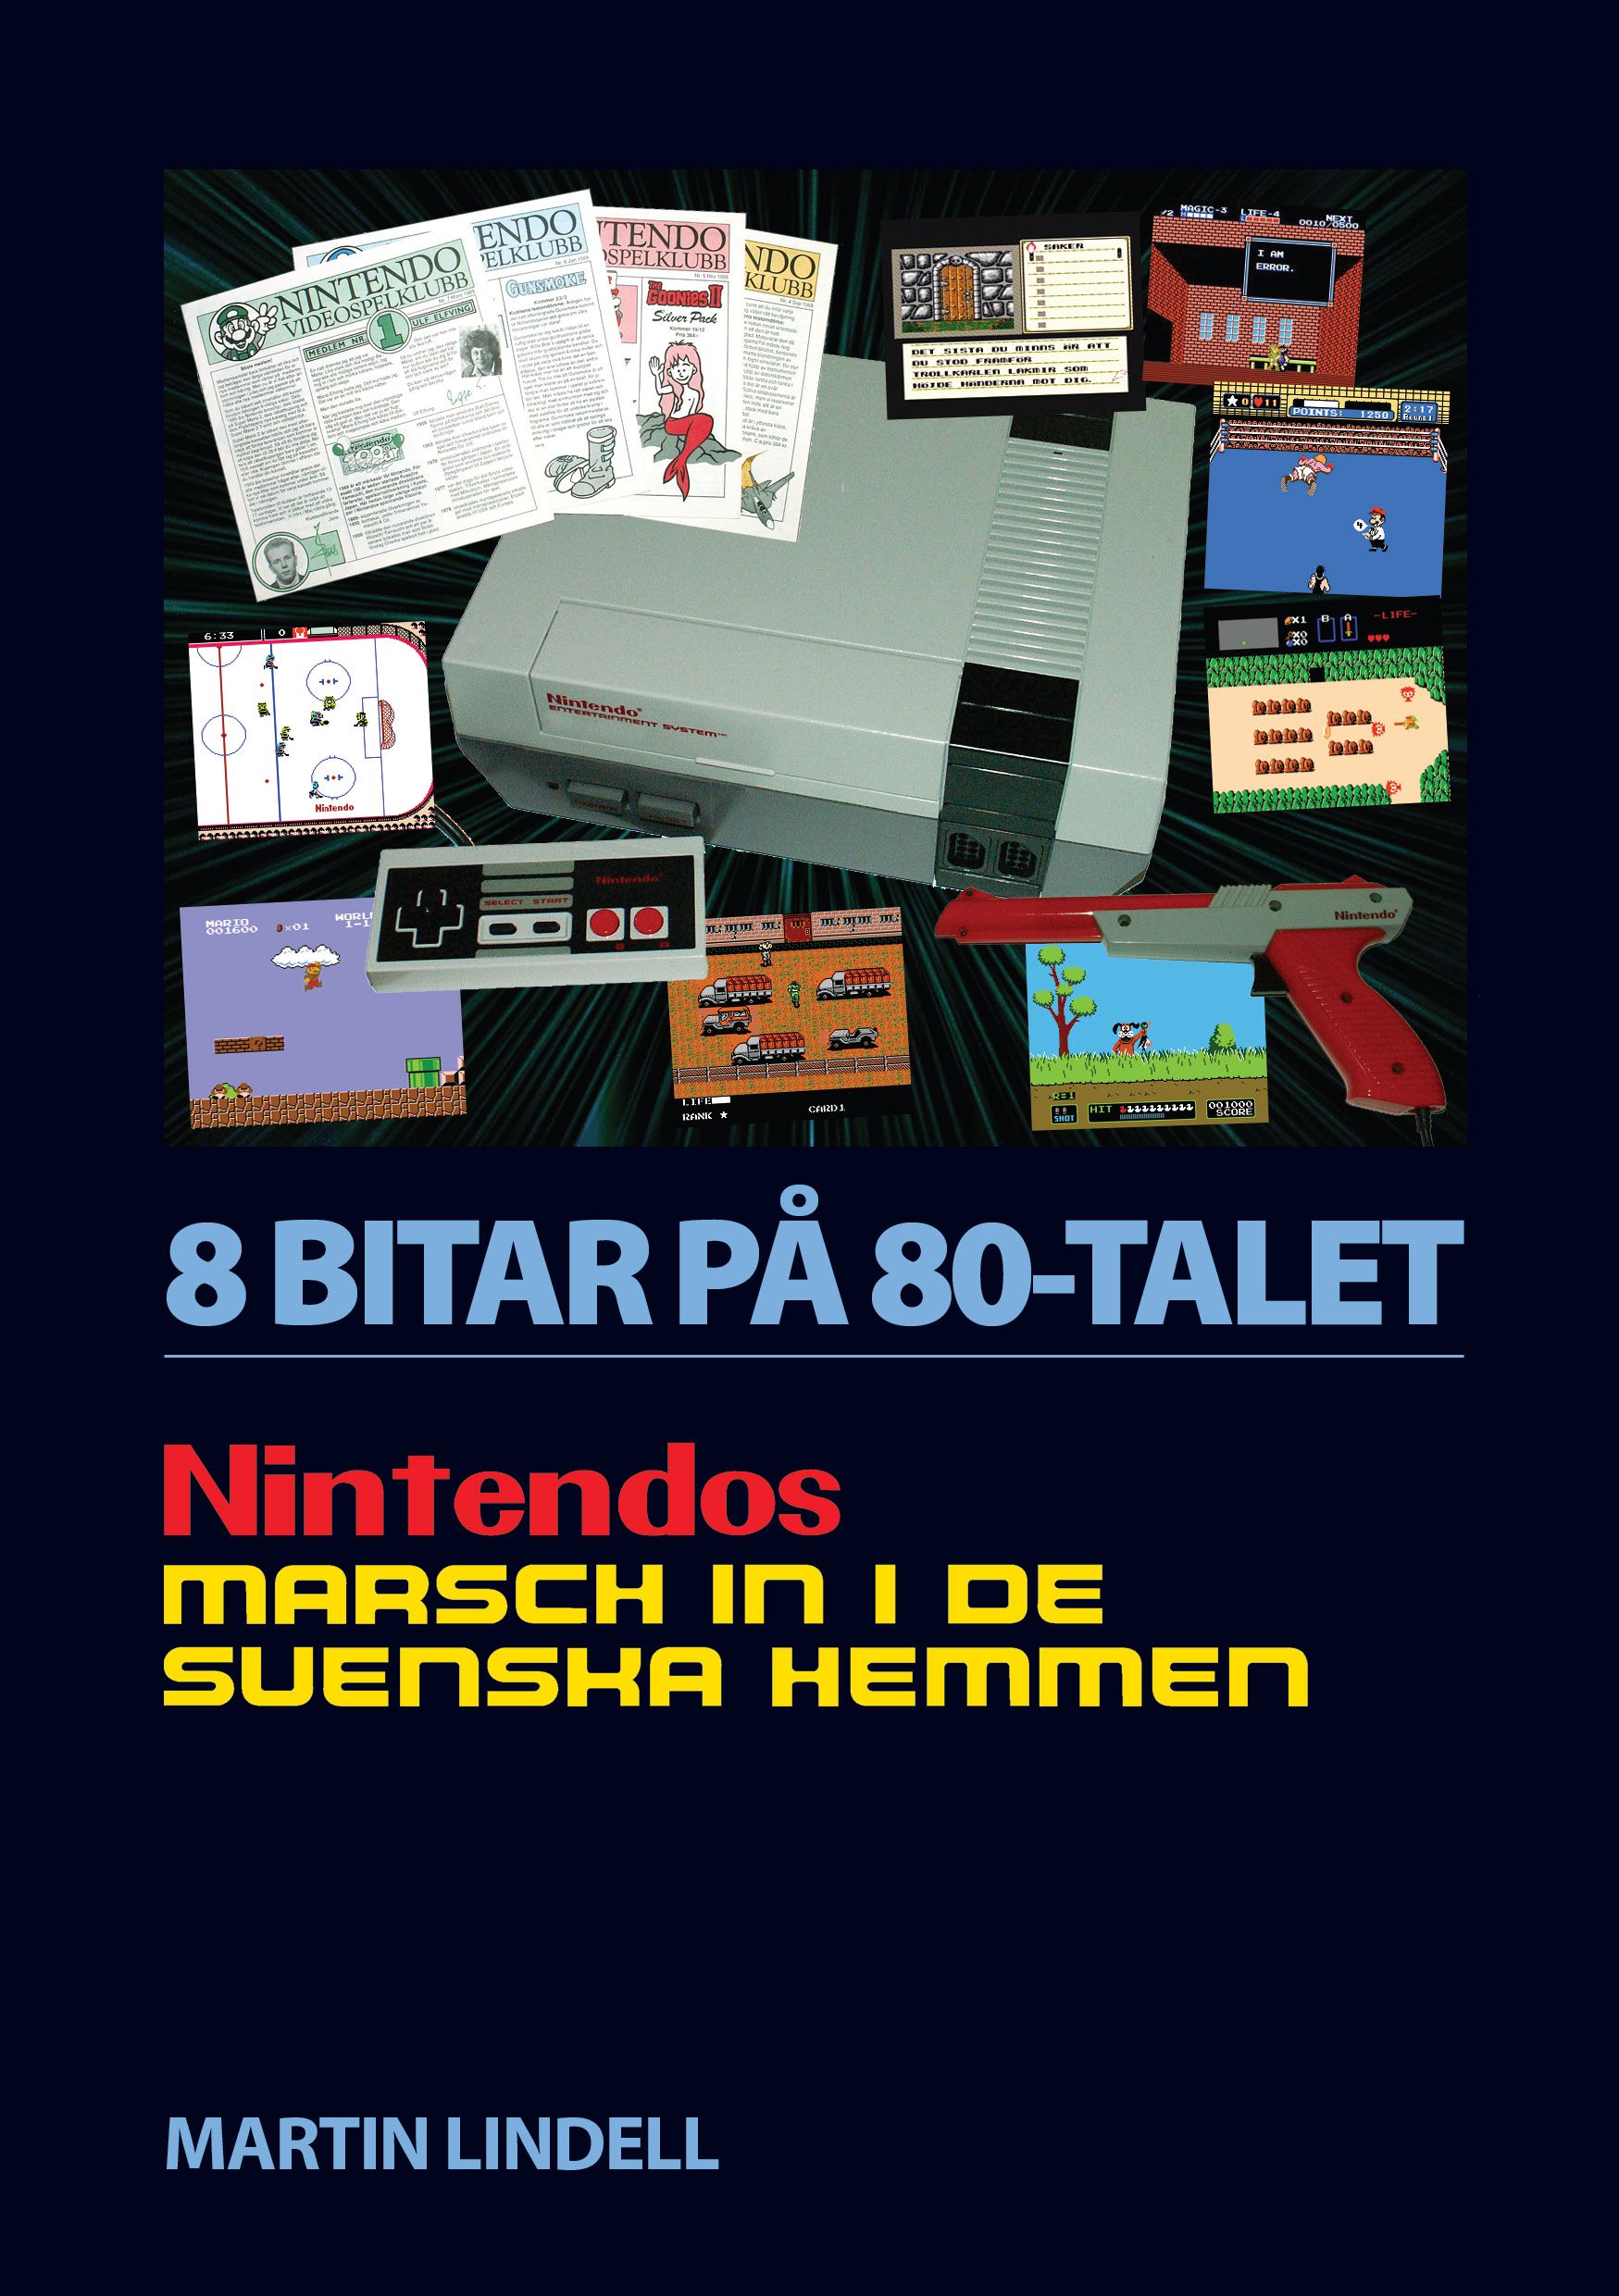 8 BITAR PÅ 80-TALET: NINTENDOS MARSCH IN I DE SVENSKA HEMMEN, eBook by Martin Lindell